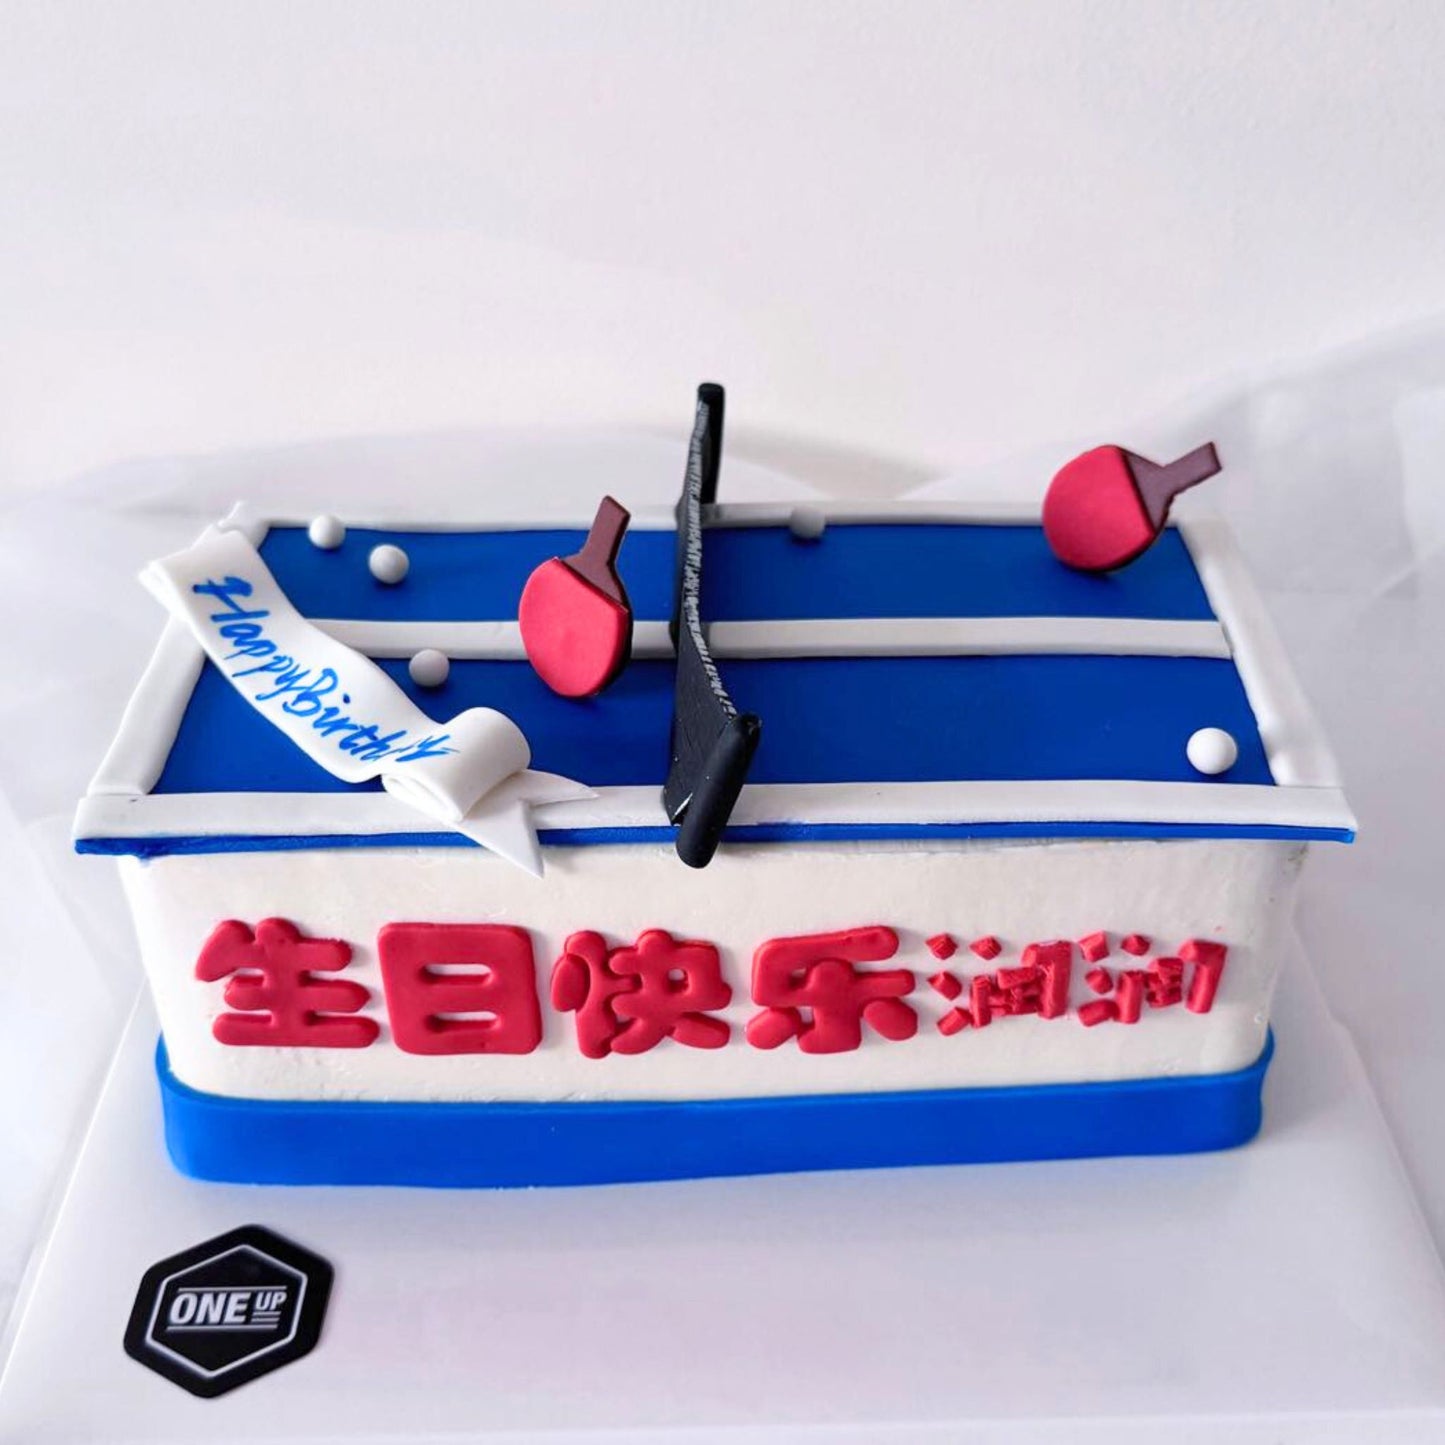 Ping Pong Birthday Cake